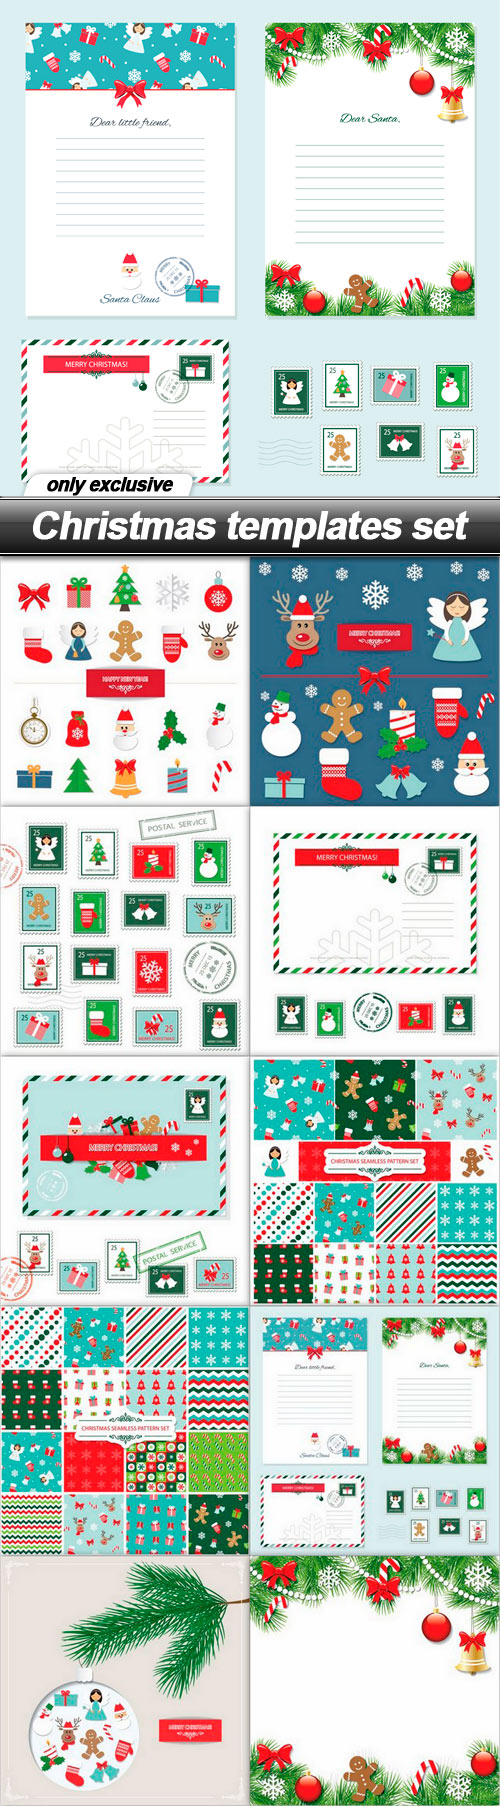 Christmas templates set - 10 EPS